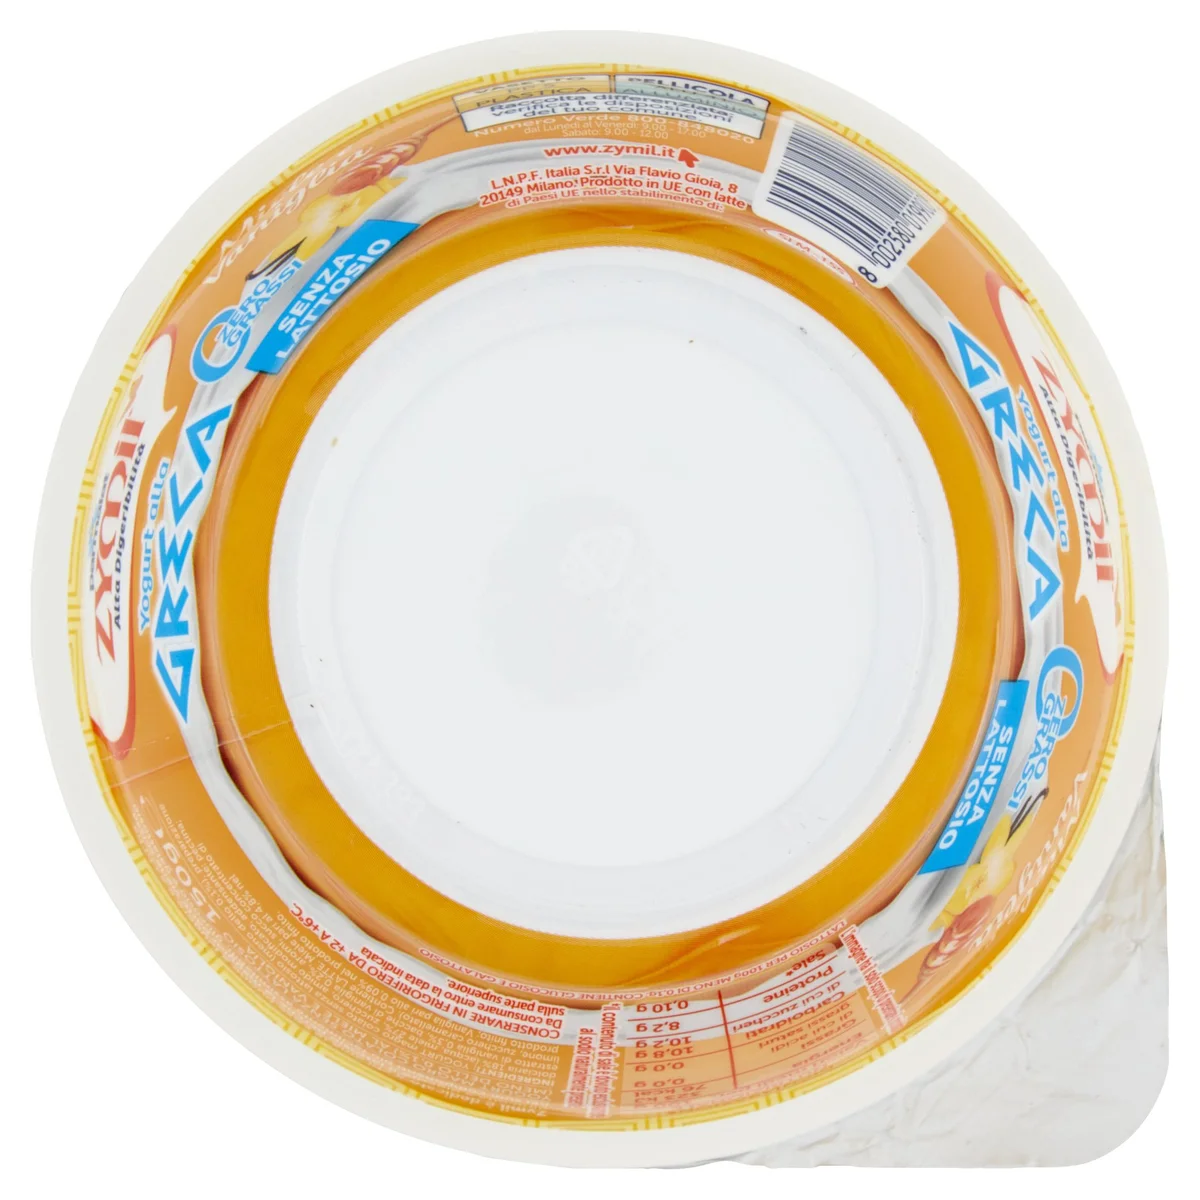 ZYMIL Alta Digeribilità Senza Lattosio Yogurt alla Greca Zero Grassi Bianco  150 g